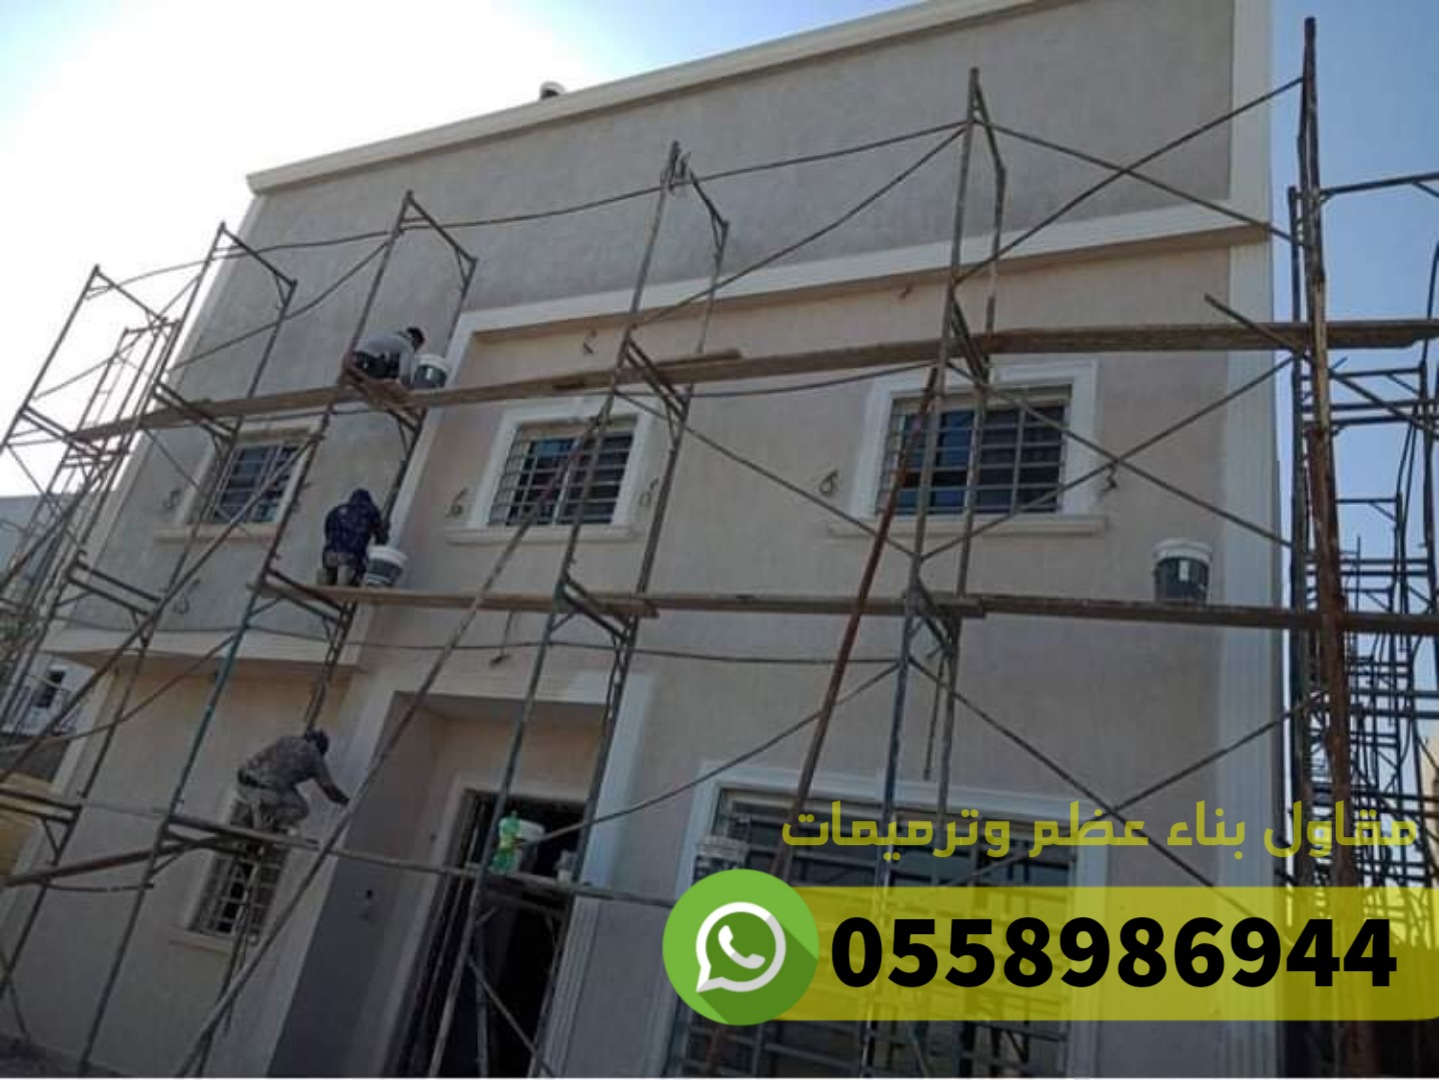 مقاول بناء عظم و ترميم في جدة, 0558986944 P_2486mzdk81